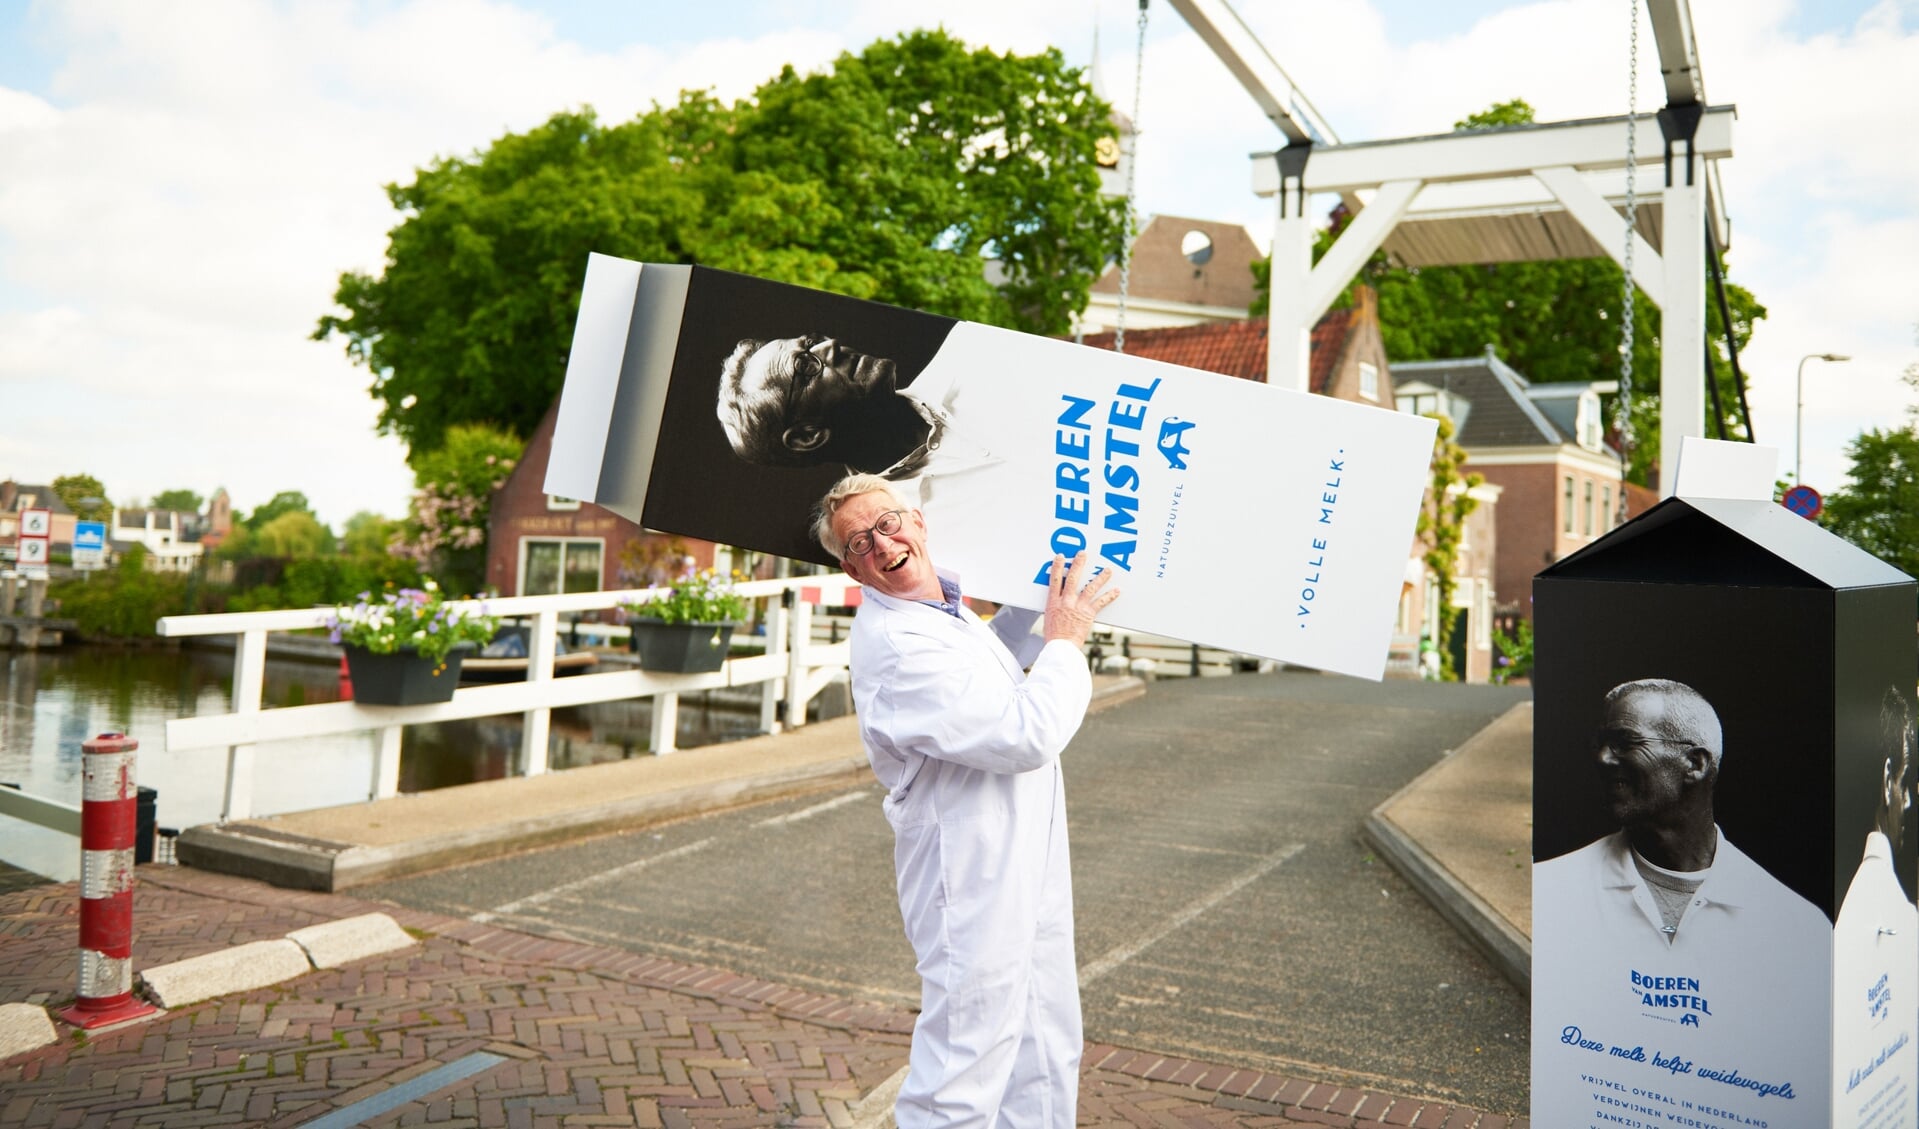 Promotie voor de melk van de Boeren van Amstel in het dorpscentrum van Ouderkerk.